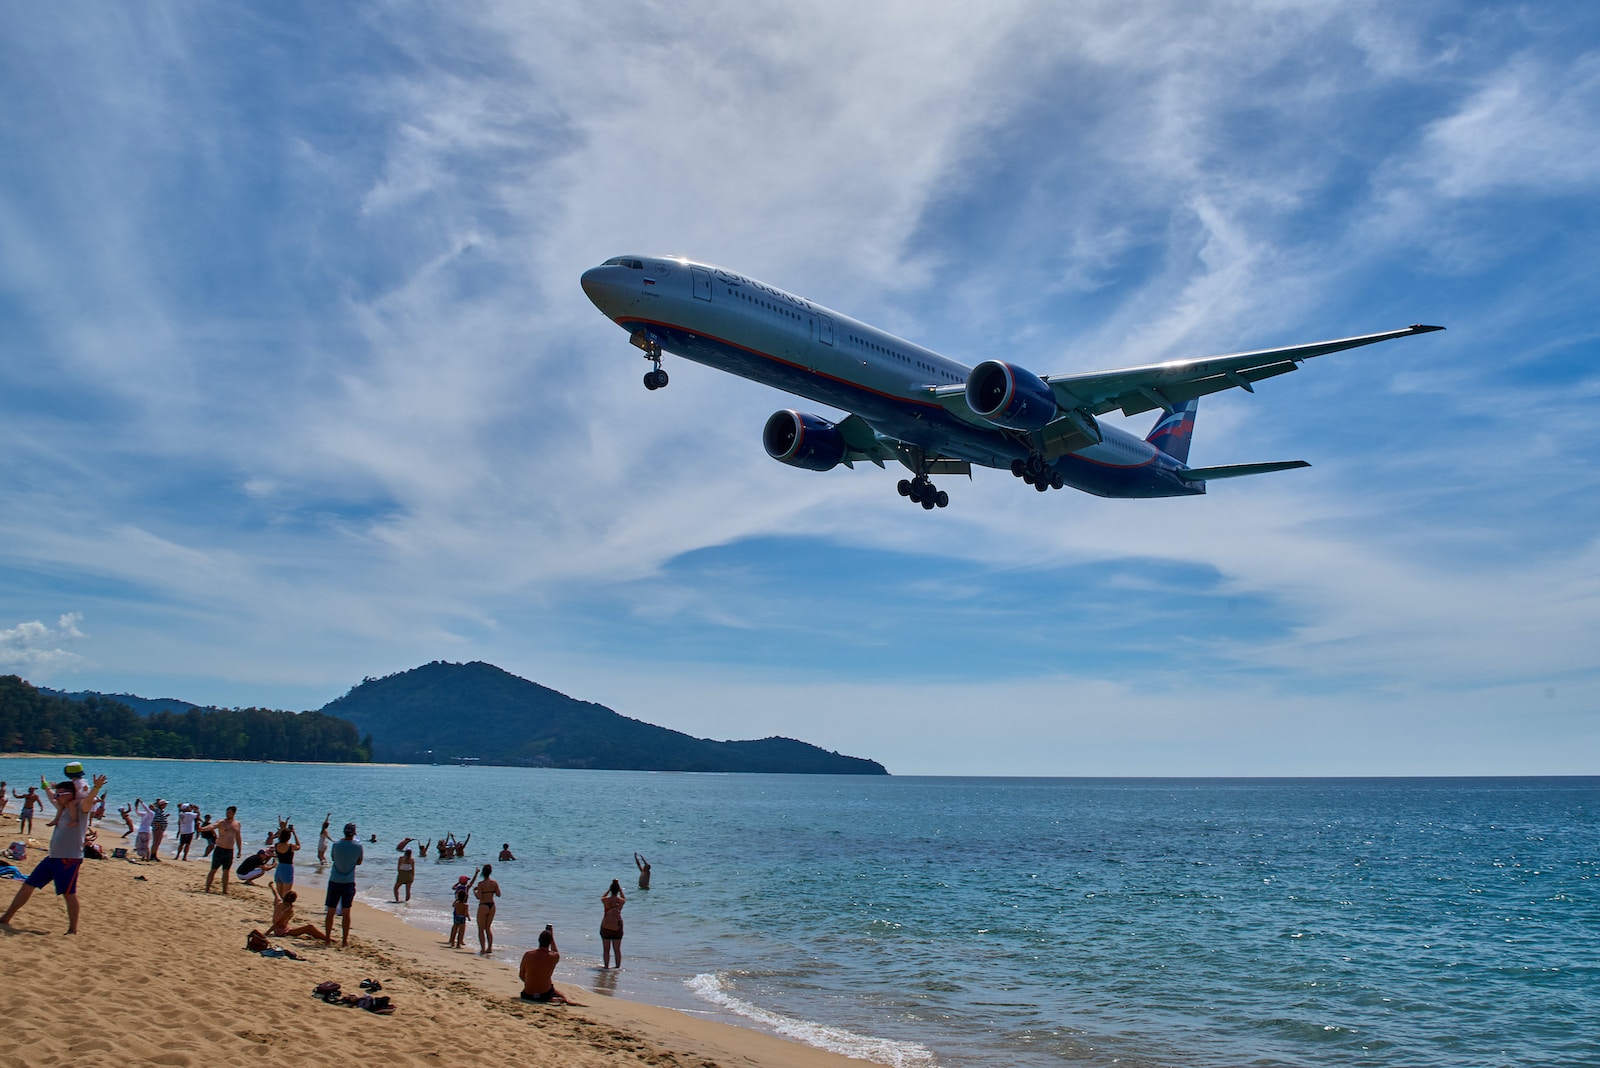 12. Der Strand am Flughafen

Der Strand vor dem Flughafen von Phuket ist eine echte Sehenswürdigkeit – auf jeden Fall für Plane Spotter und alle, die von Flugzeugen fasziniert sind.